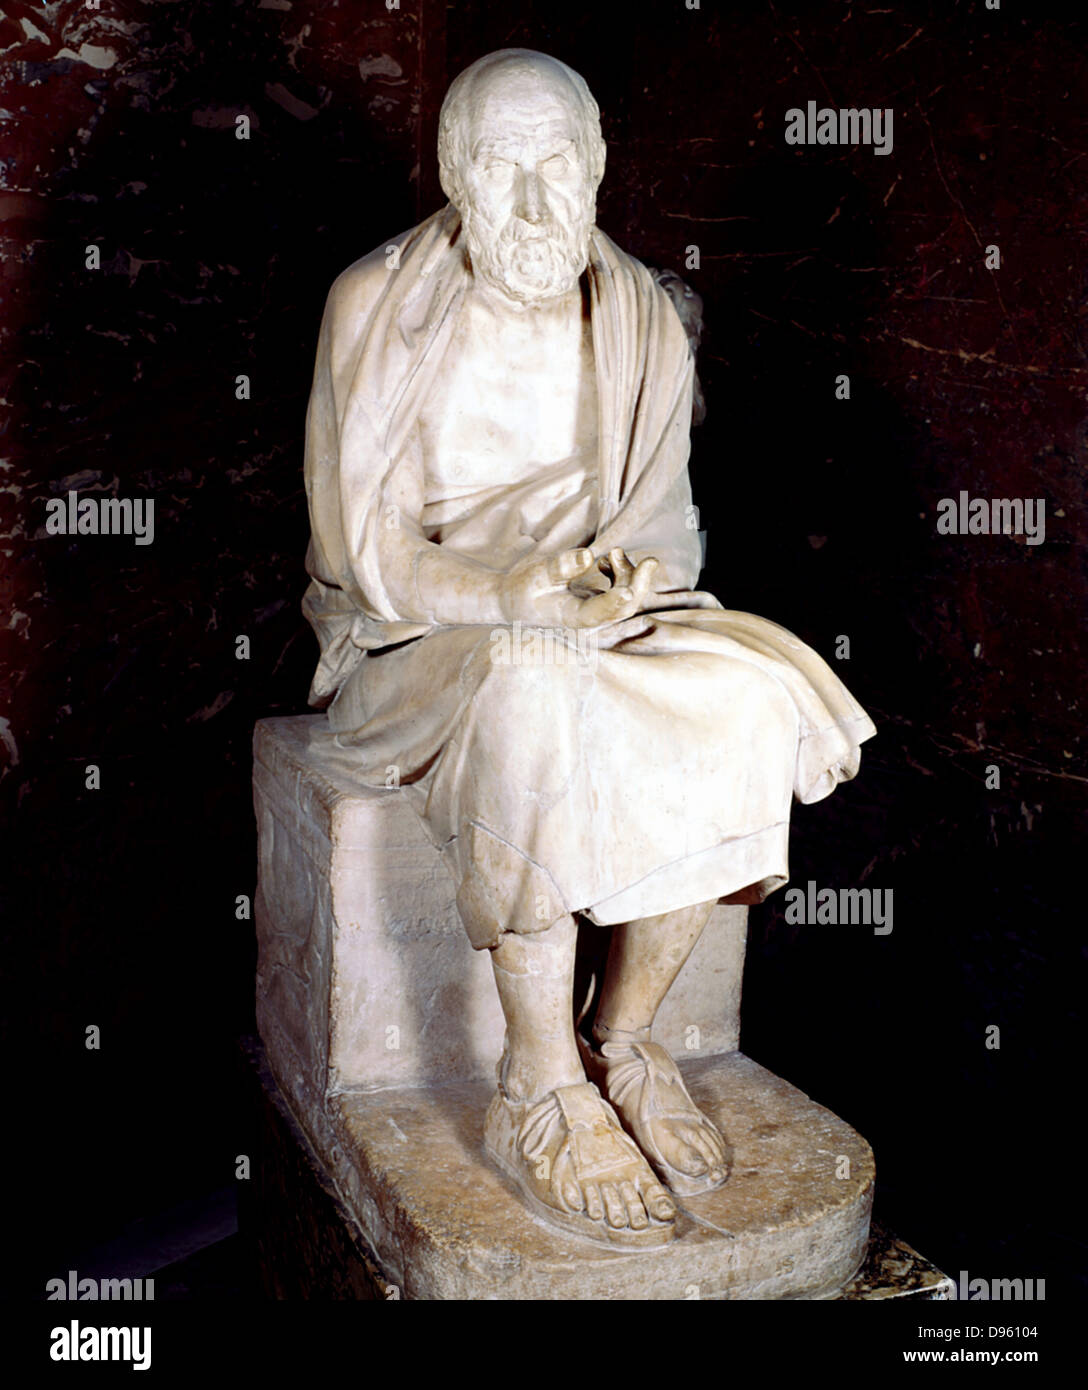 Hérodote (c485-425 BC) historien grec, souvent appelé le père de l'histoire. Statue de l'homme assis dit Hérodote. Louvre, Paris Banque D'Images